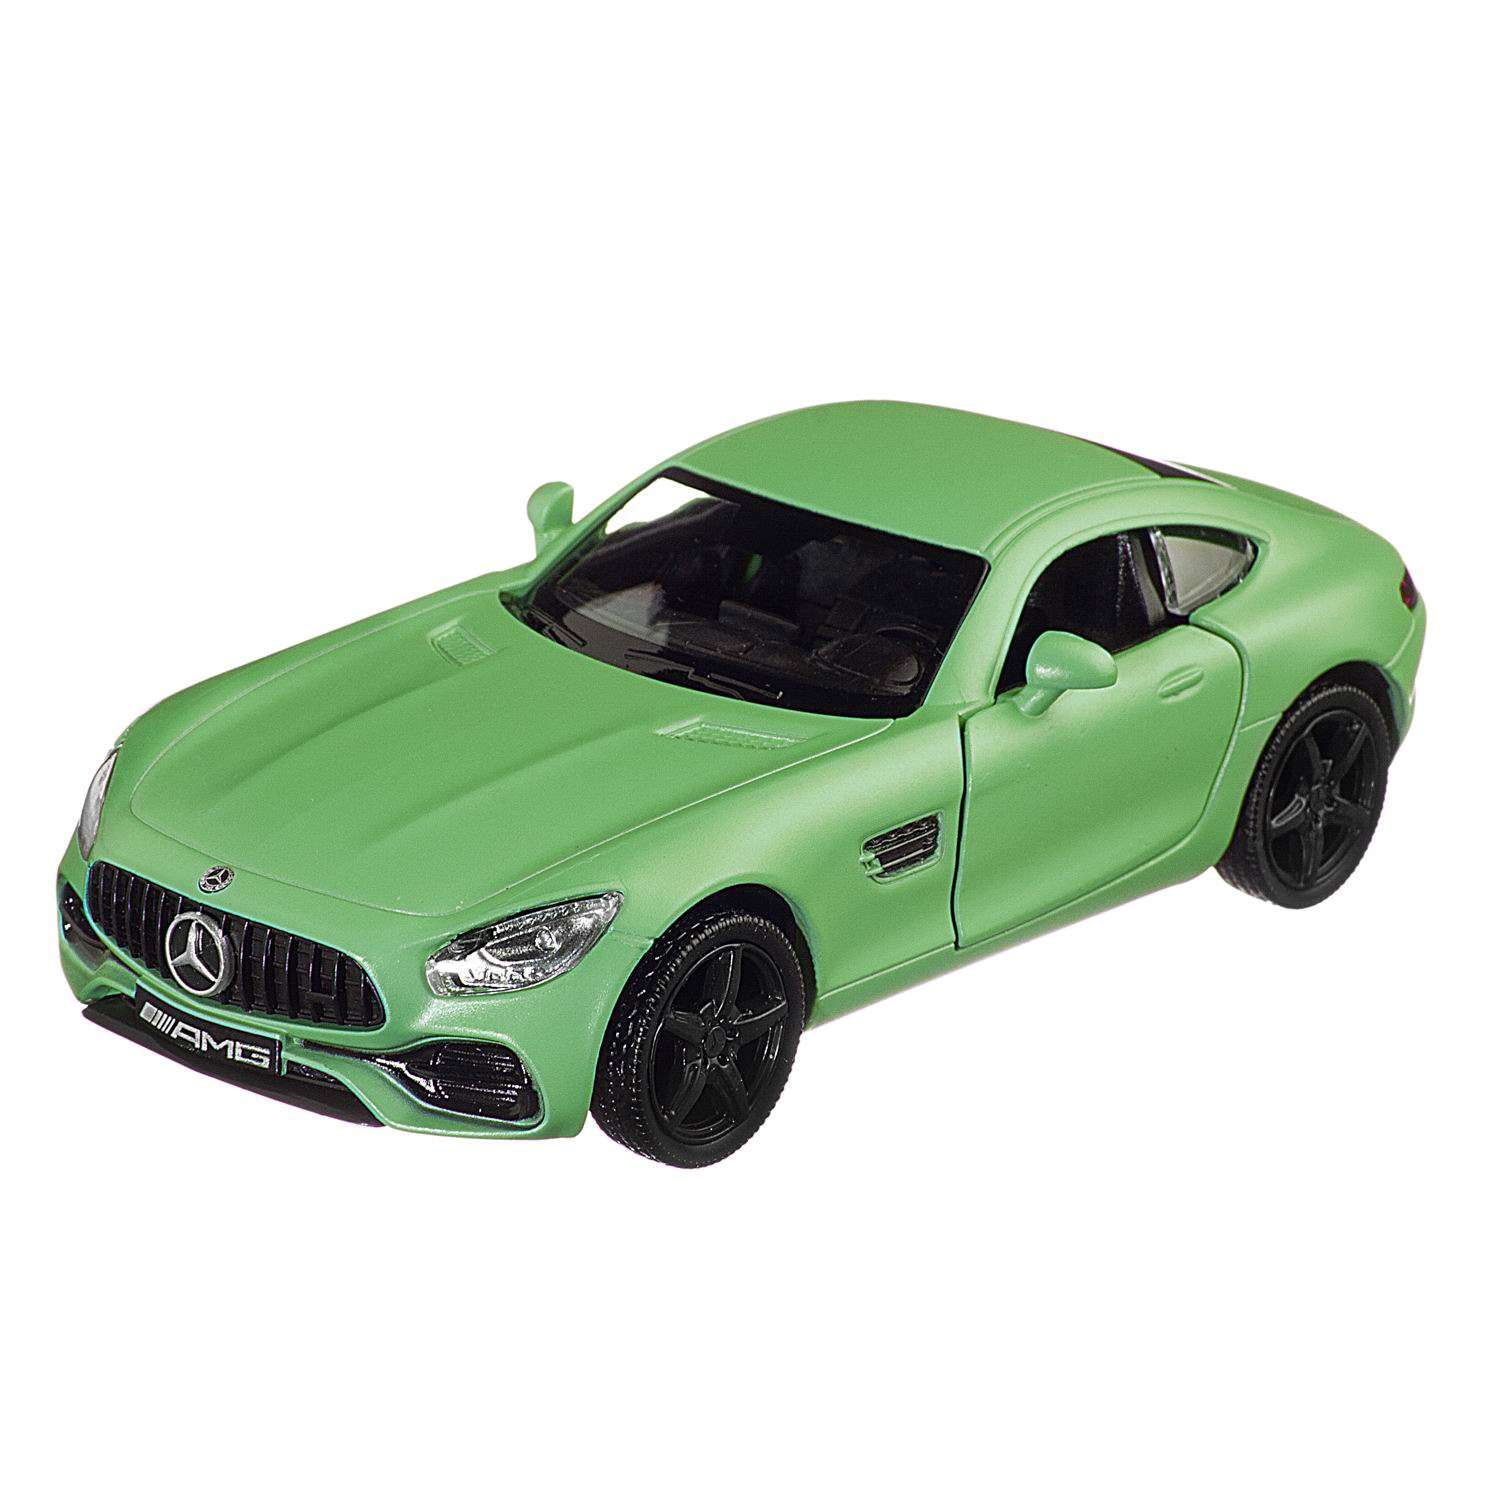 Машина металлическая Uni-Fortune Mercedes Benz 2018 зеленый матовый цвет двери открываются 554988M(E) - фото 1